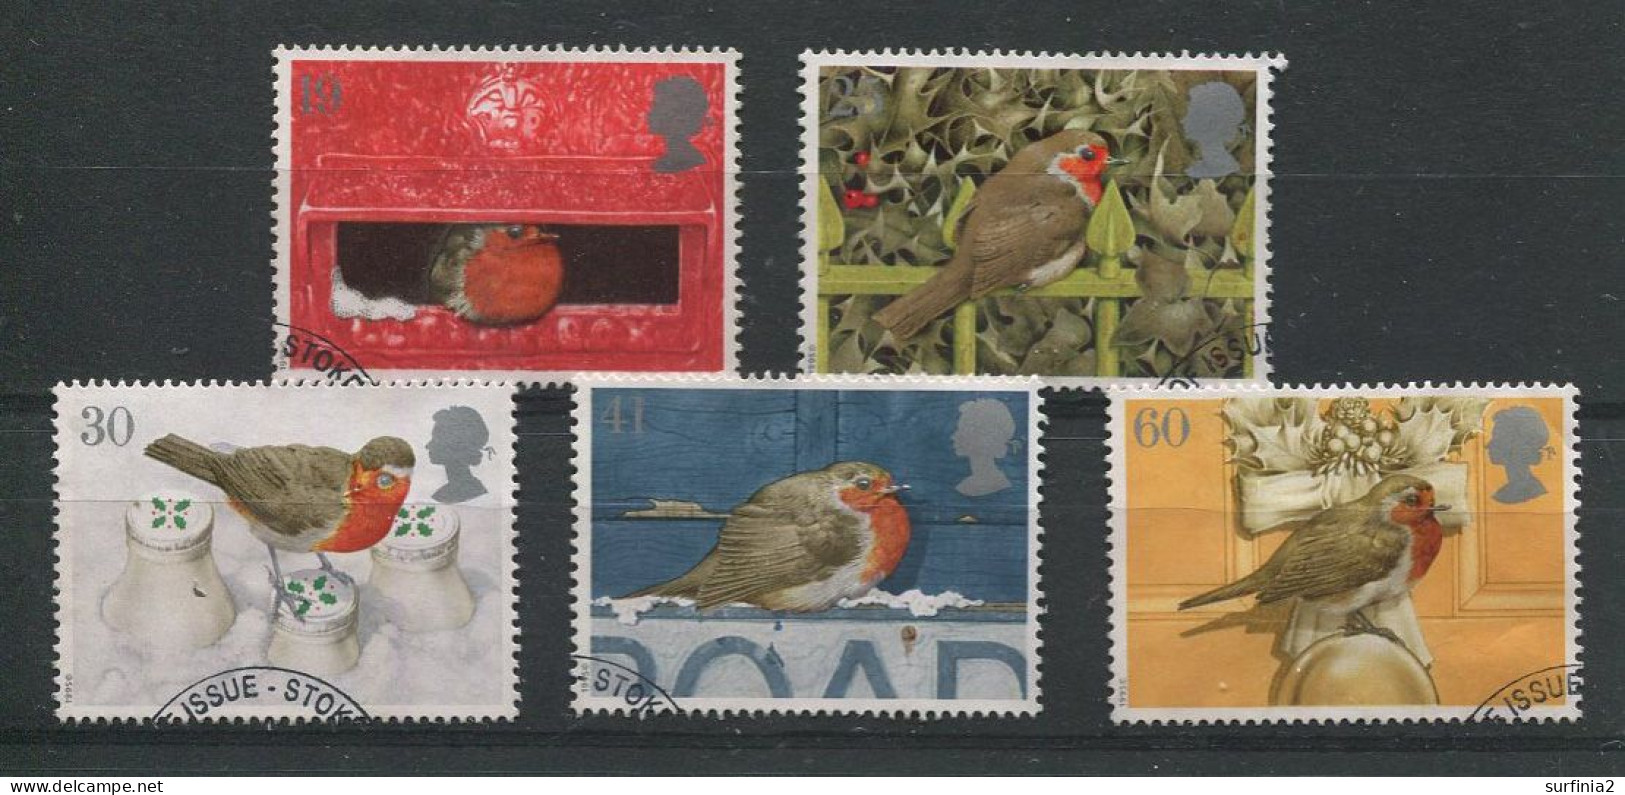 STAMPS - 1995 CHRISTMAS SET VFU - Used Stamps